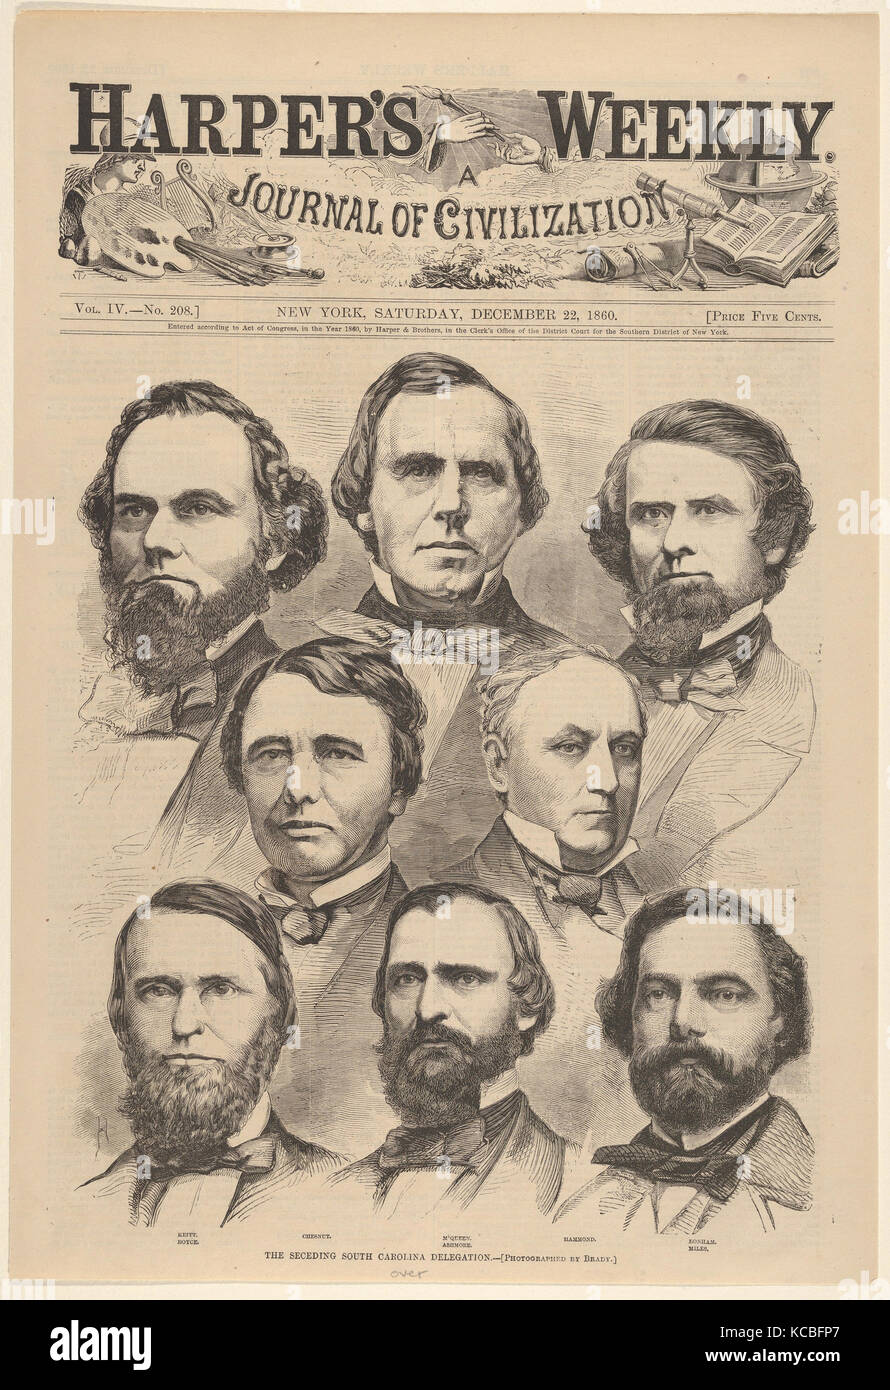 Die Trennung South Carolina Delegation fotografiert von Brady (aus Harper's Weekly, Bd. IV), nach Mathew B. Brady Stockfoto